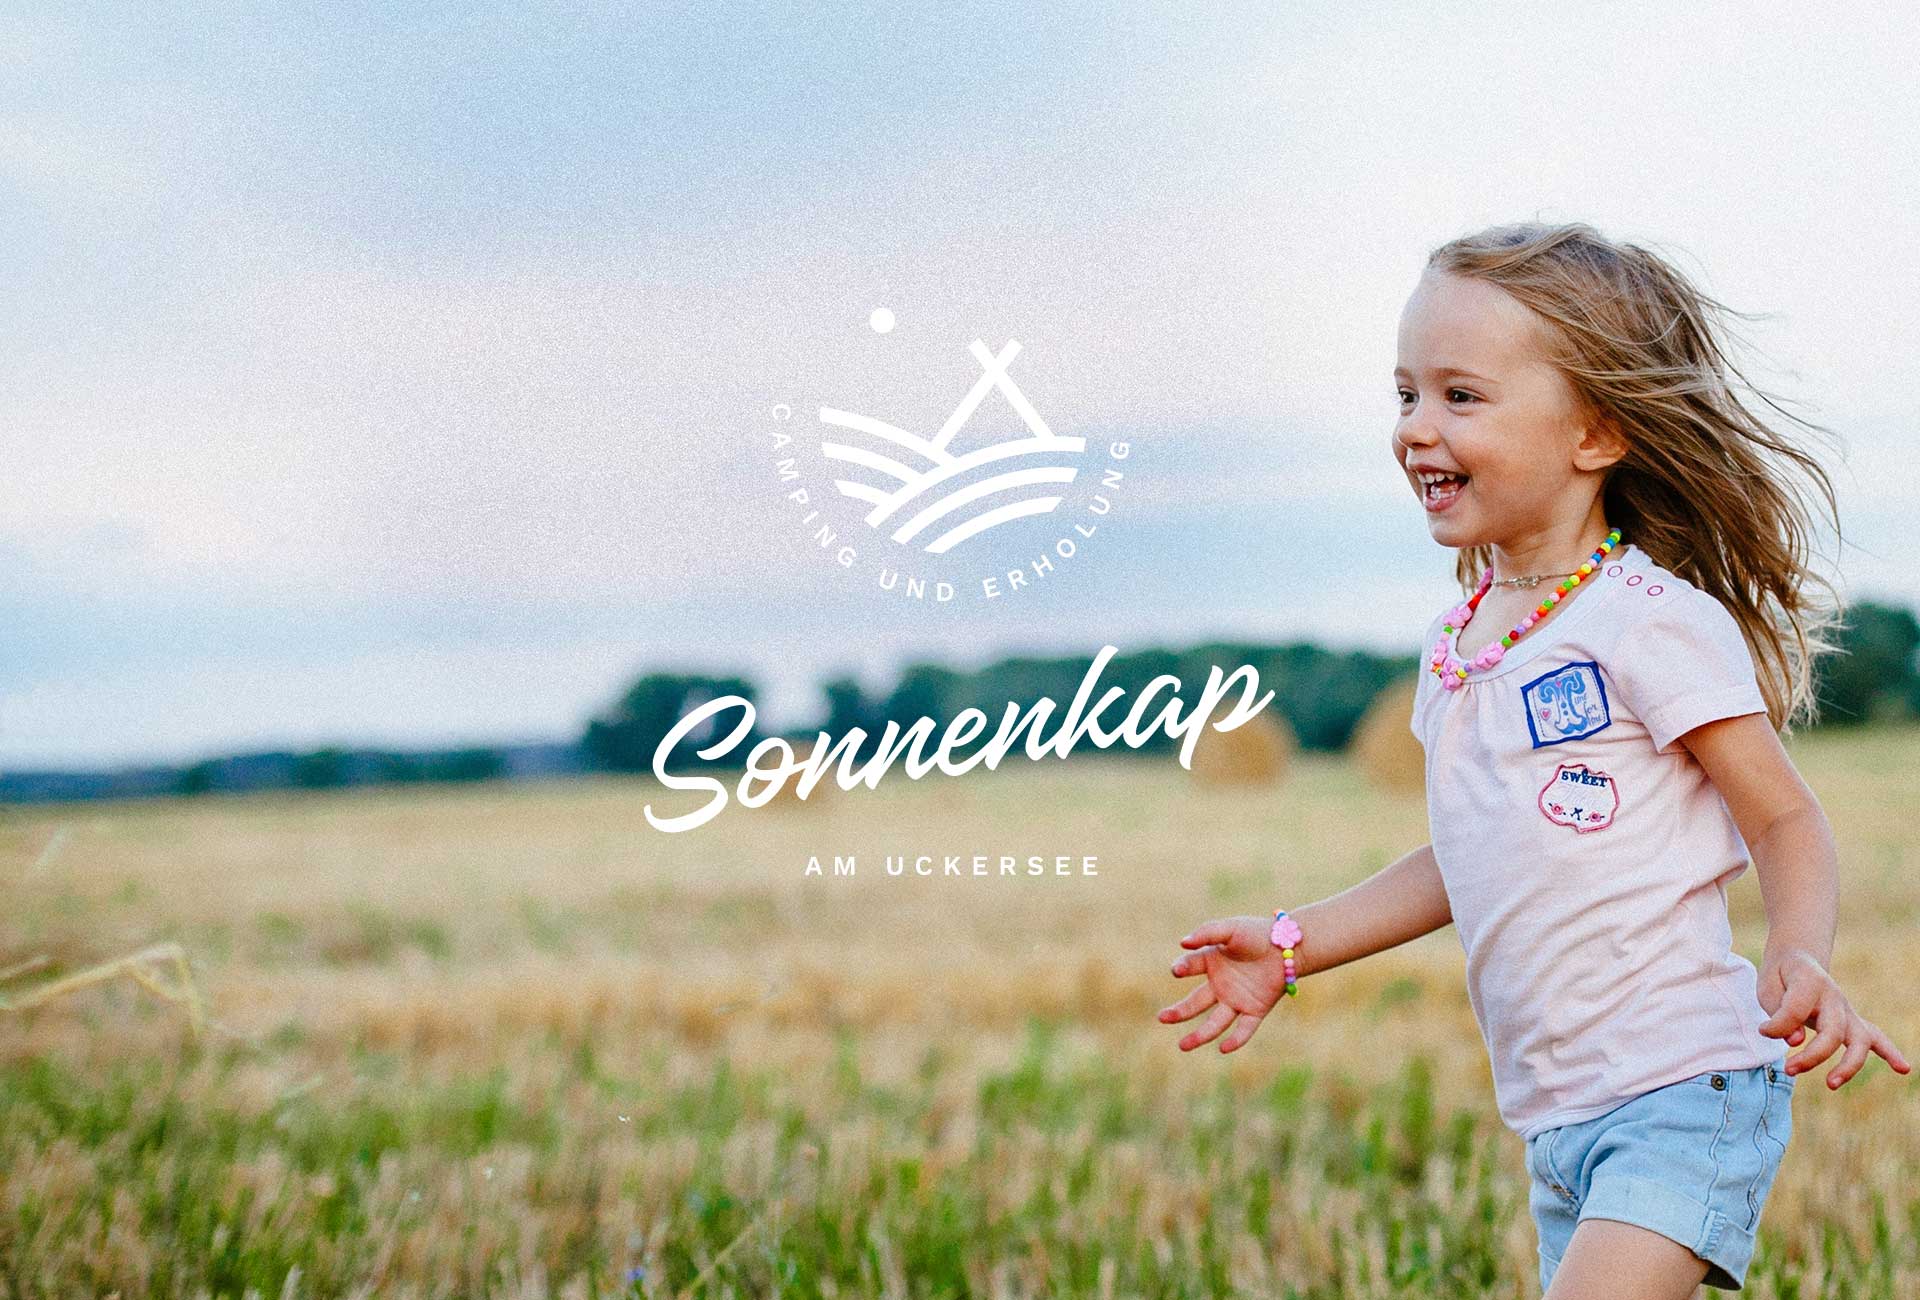 Logogestaltung — Naming, Markendesign und Markentwicklung für Campingplatz Sonnenkap in der Uckermark